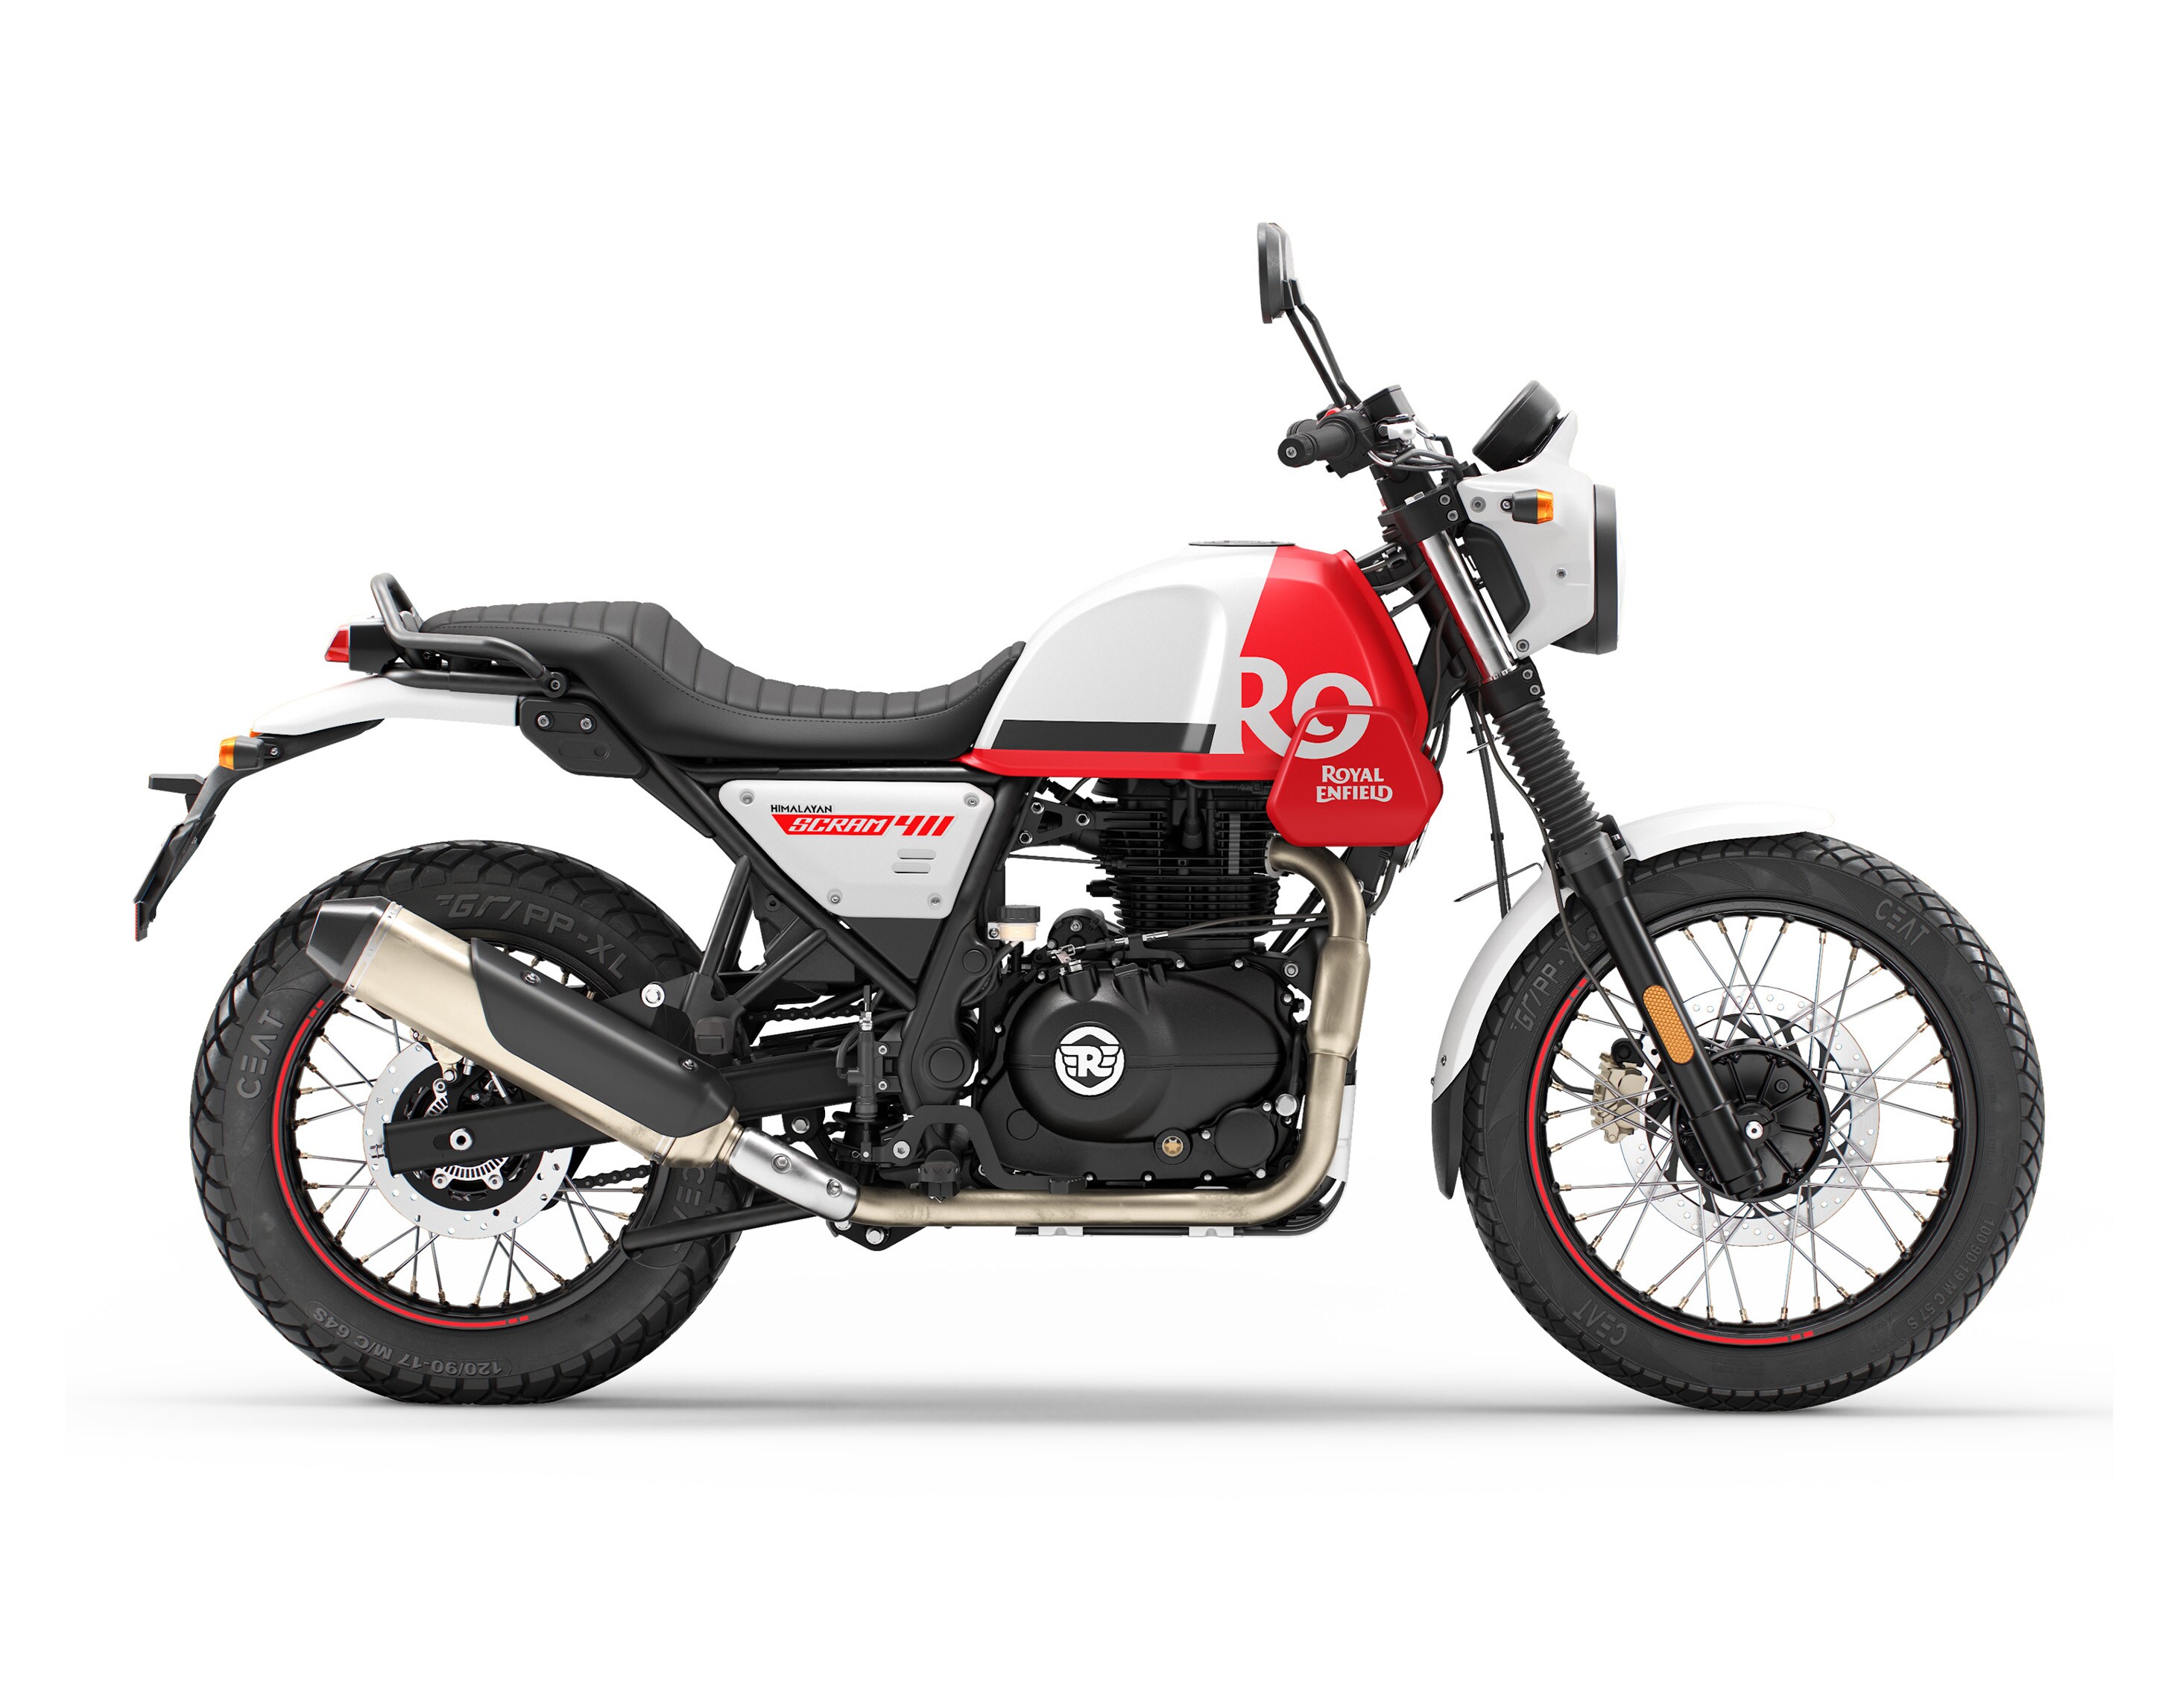 Scram 411 motorcycle